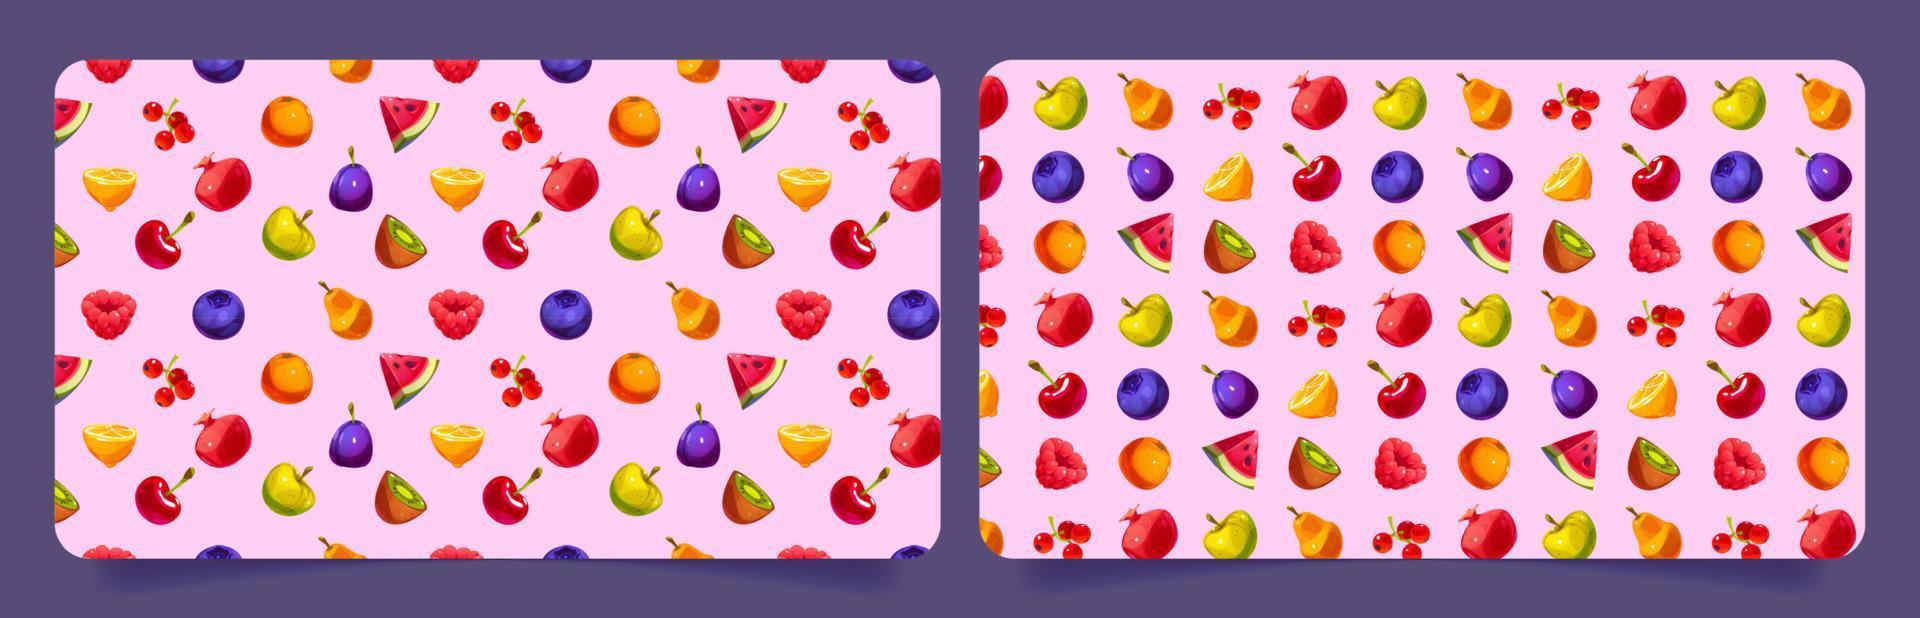 plantilla de banners con patrón de frutas y bayas vector